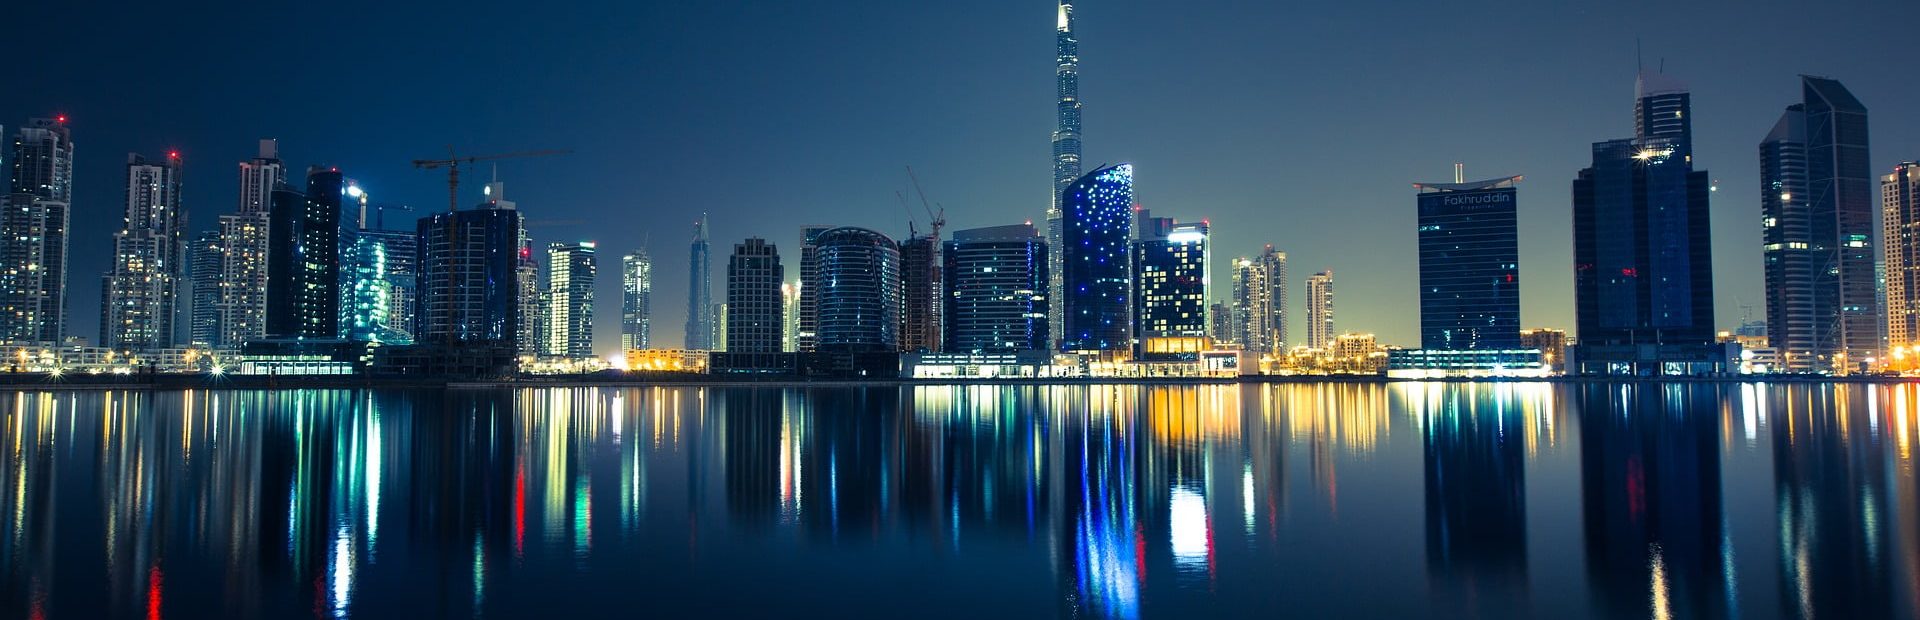 Burj-Khalifa-Glimpses-of-the-World